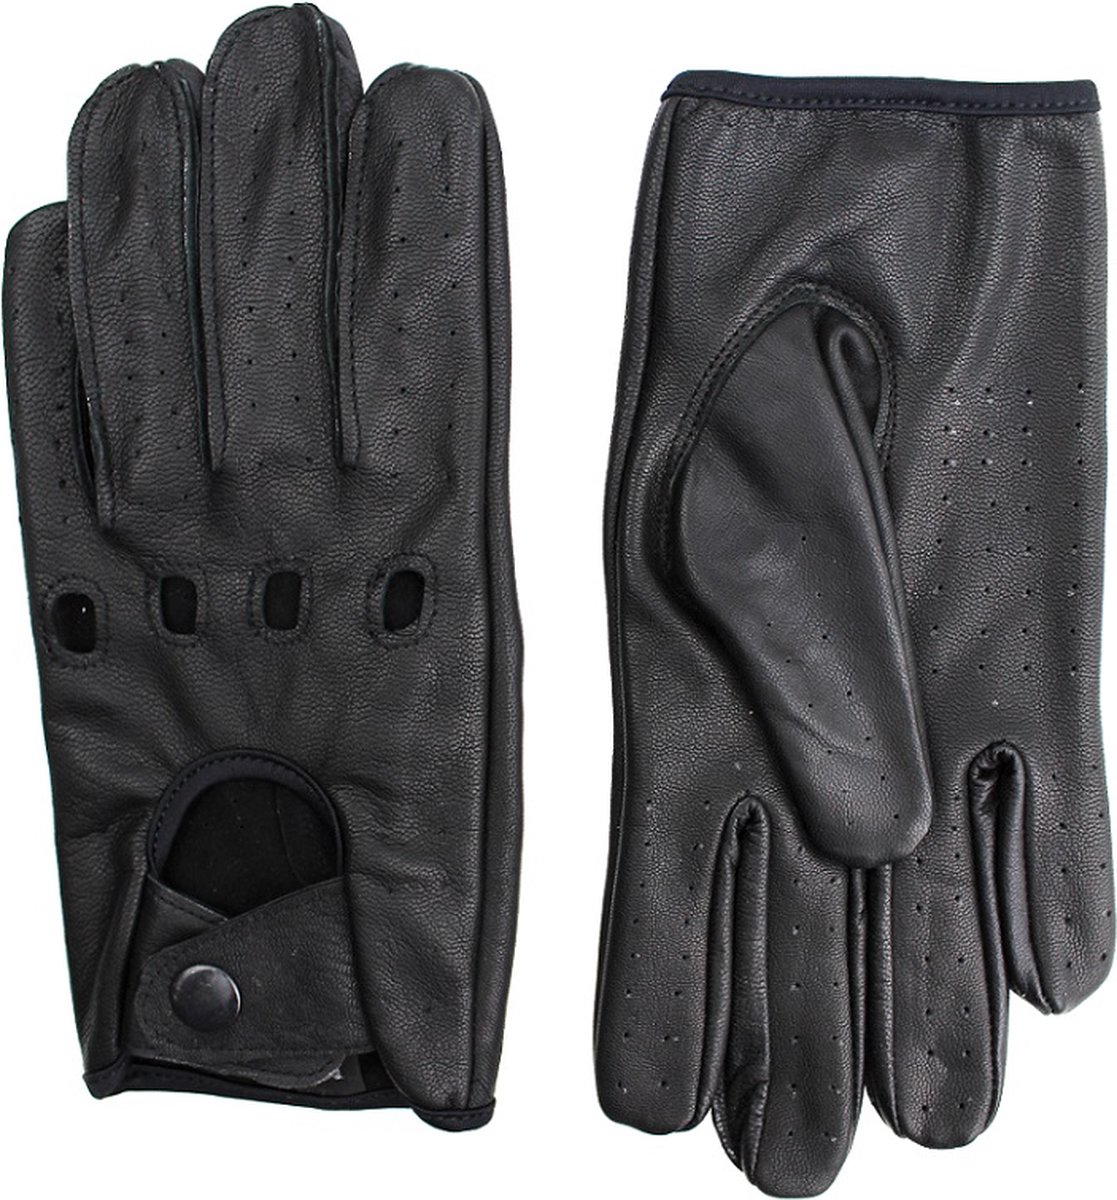 Zwart Leren Handschoenen - Autohandschoenen- 100% Lamsleder - Exclusieve Autohandschoenen - Race Handschoenen - Maat XS